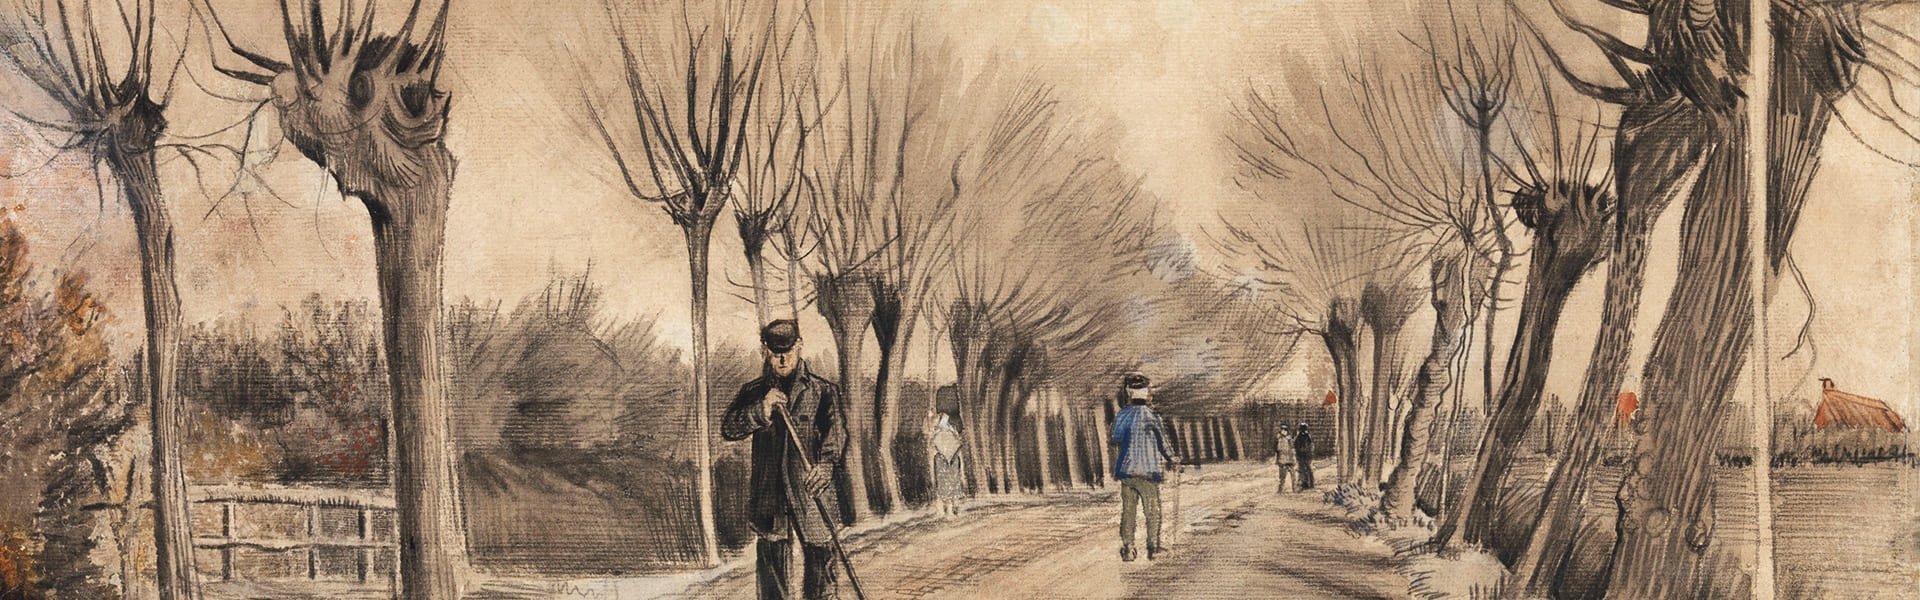 De weg in Etten, Vincent van Gogh, 1881